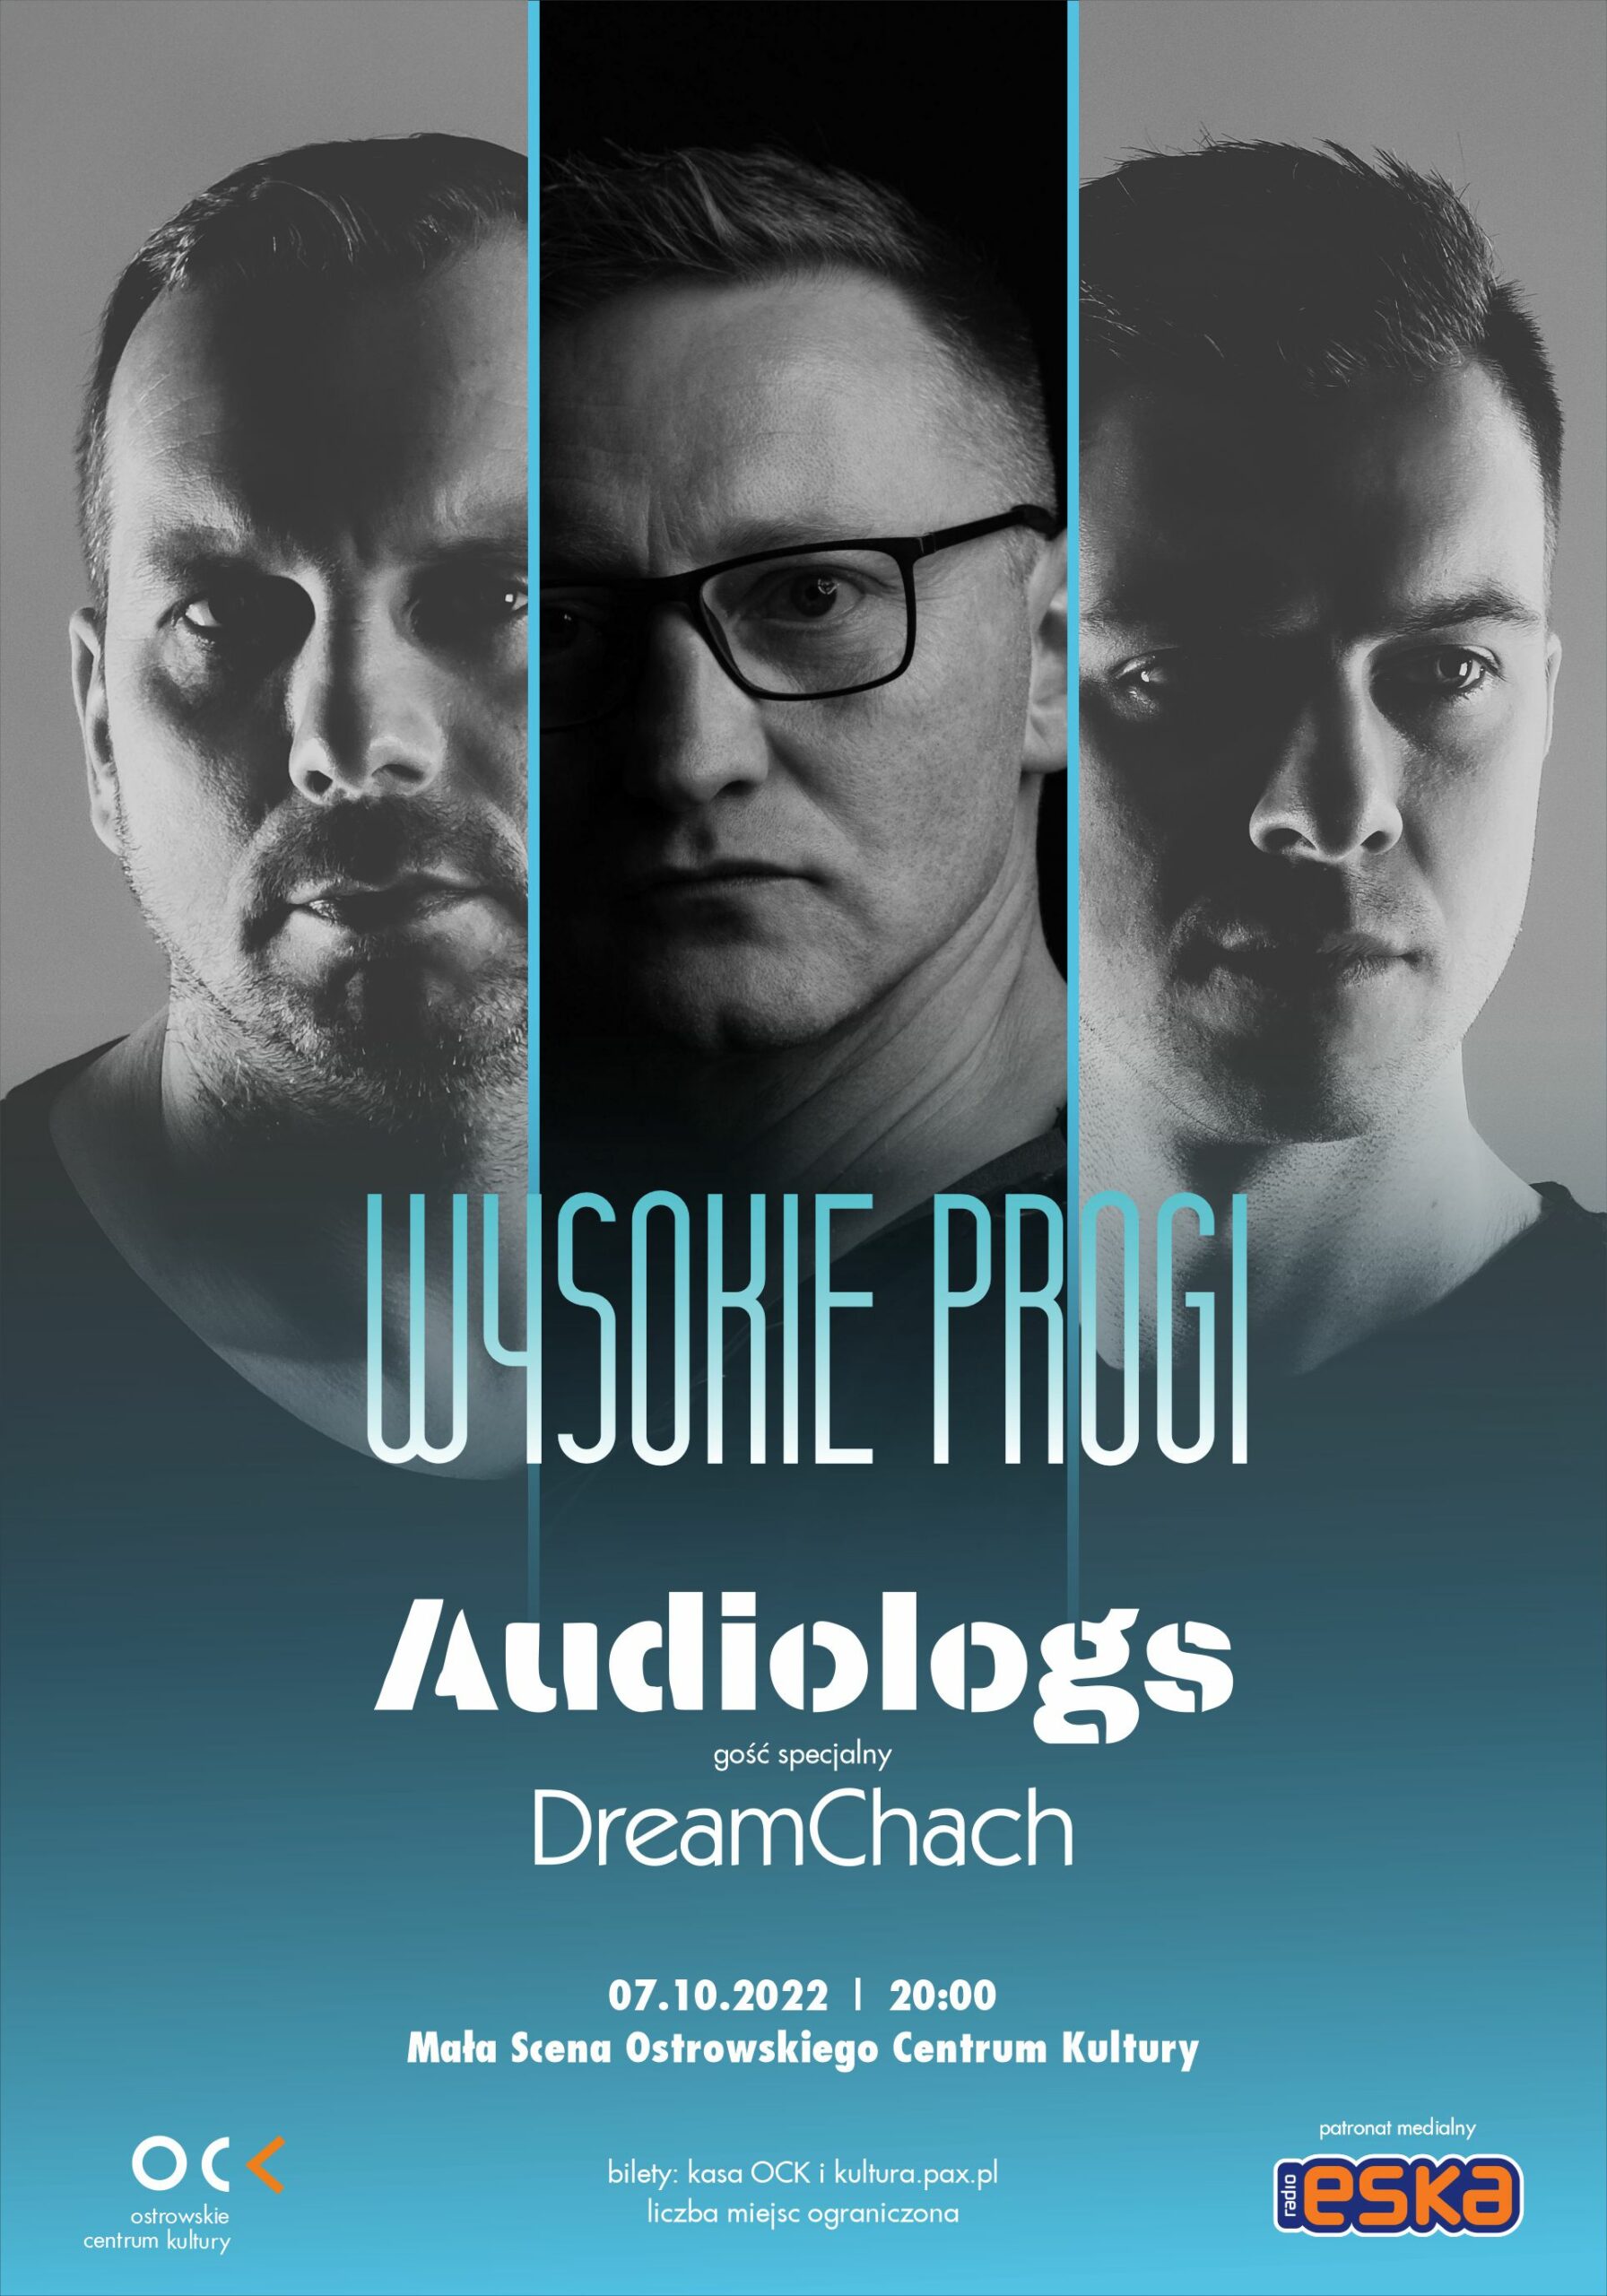 WYSOKIE PROGI | Audiologs i gość specjalny DreamChach